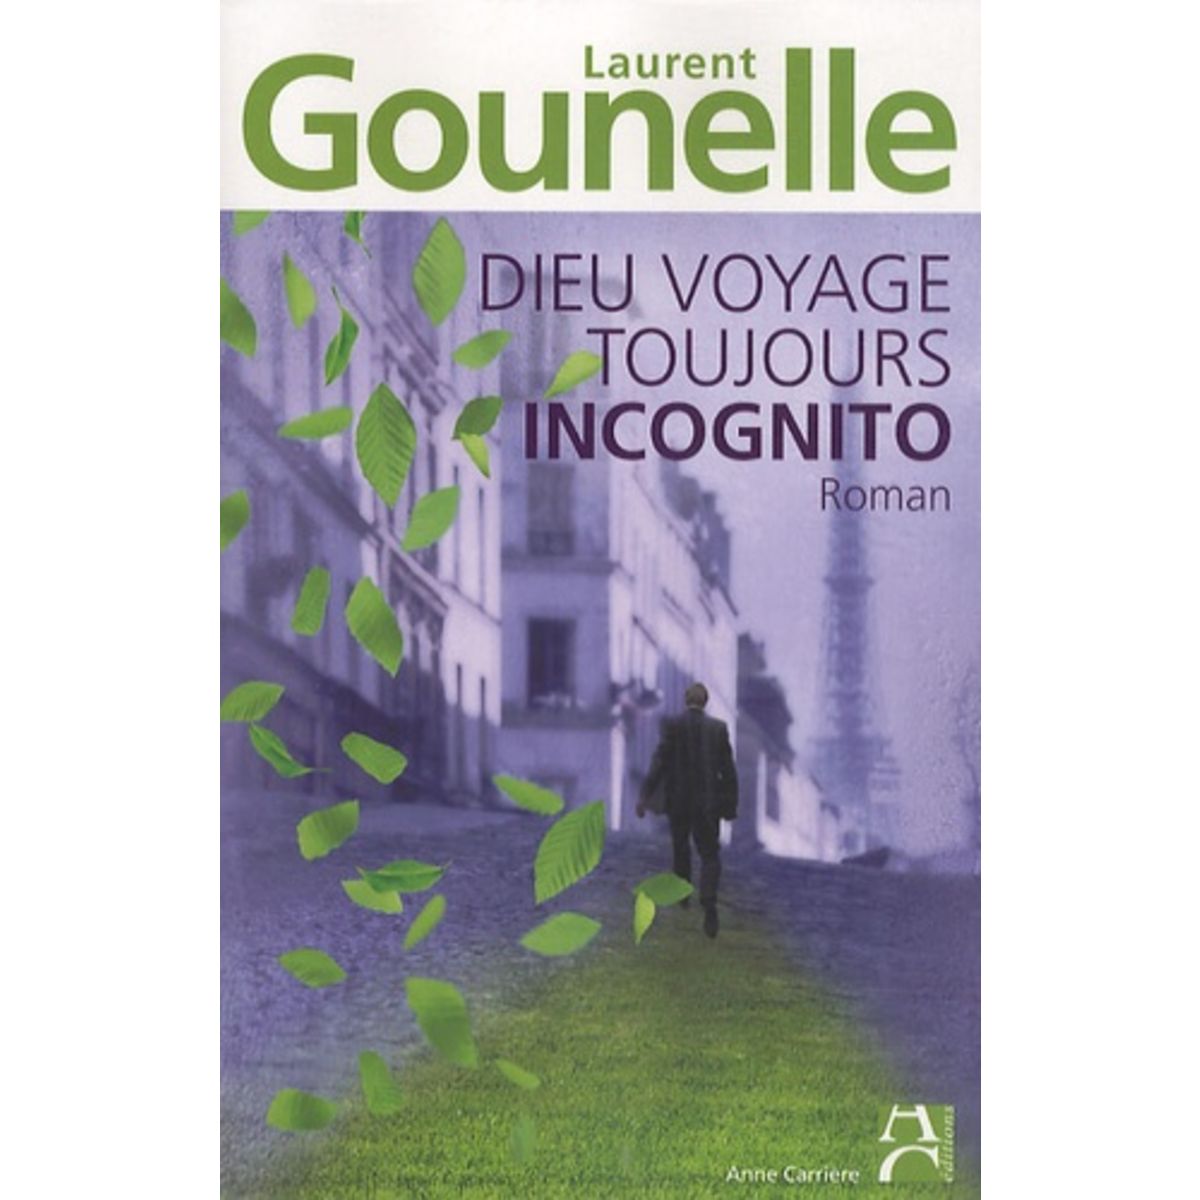  DIEU VOYAGE TOUJOURS INCOGNITO, Gounelle Laurent